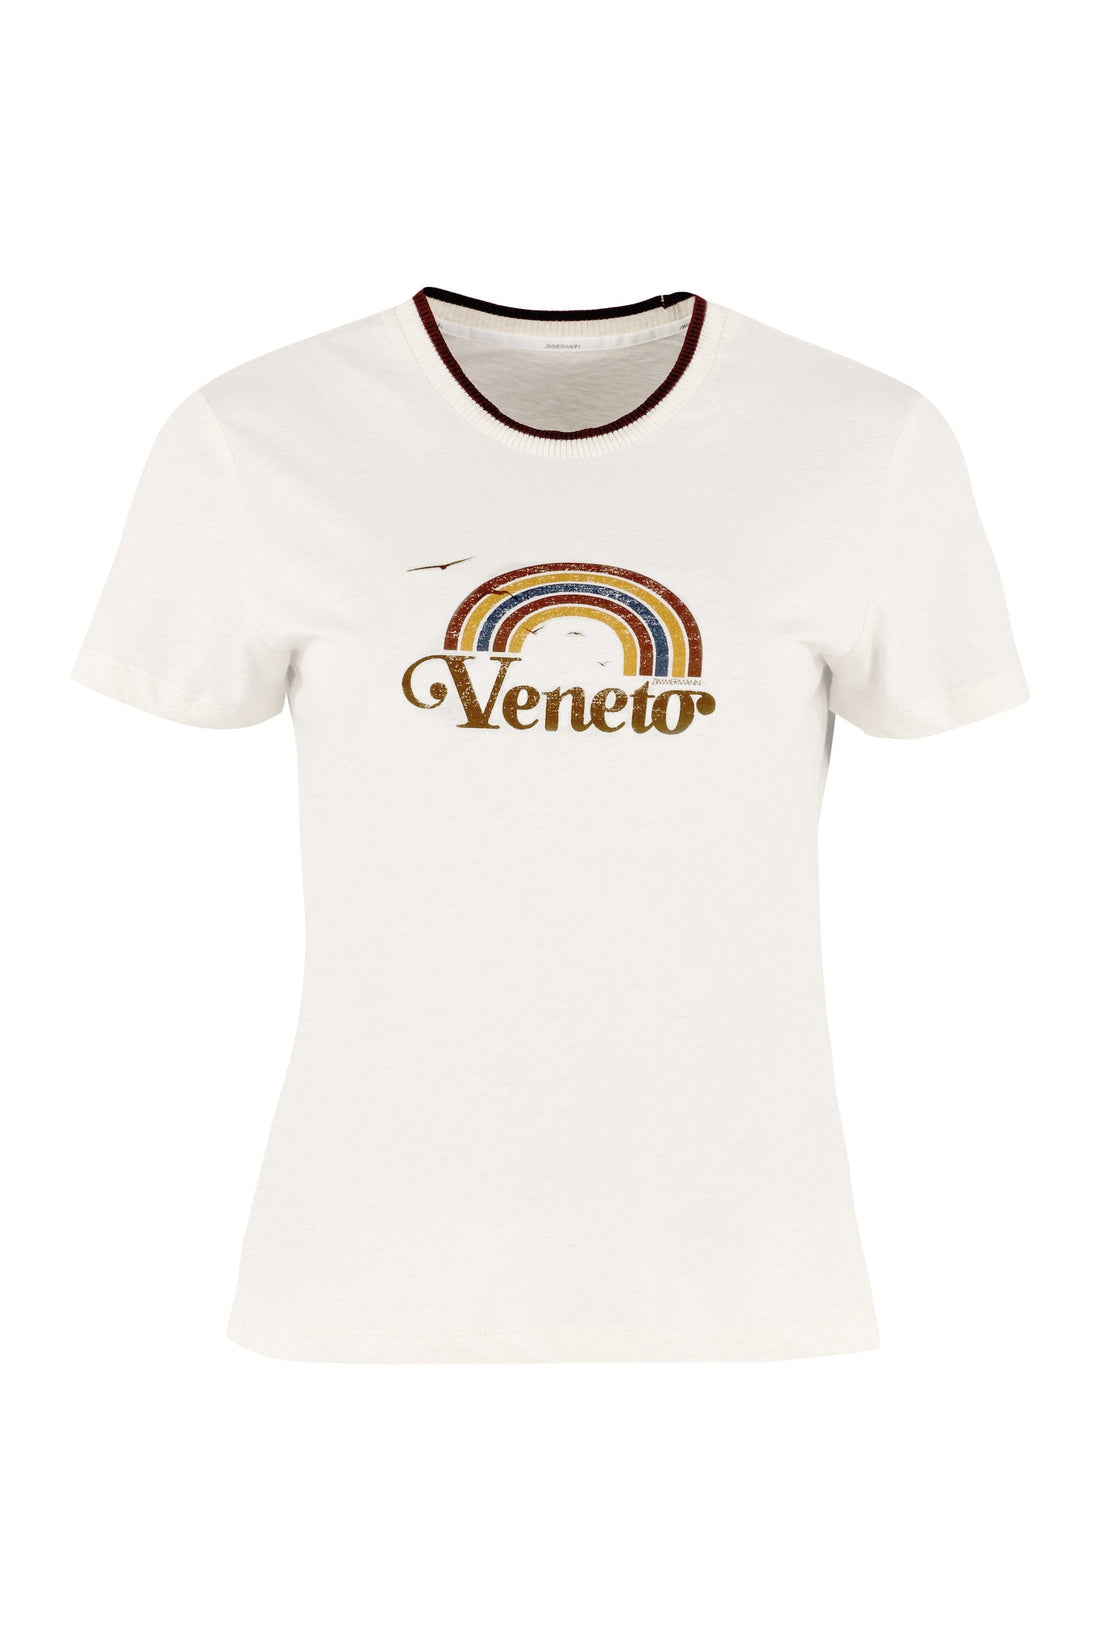 Zimmermann-OUTLET-SALE-Veneto printed cotton T-shirt-ARCHIVIST